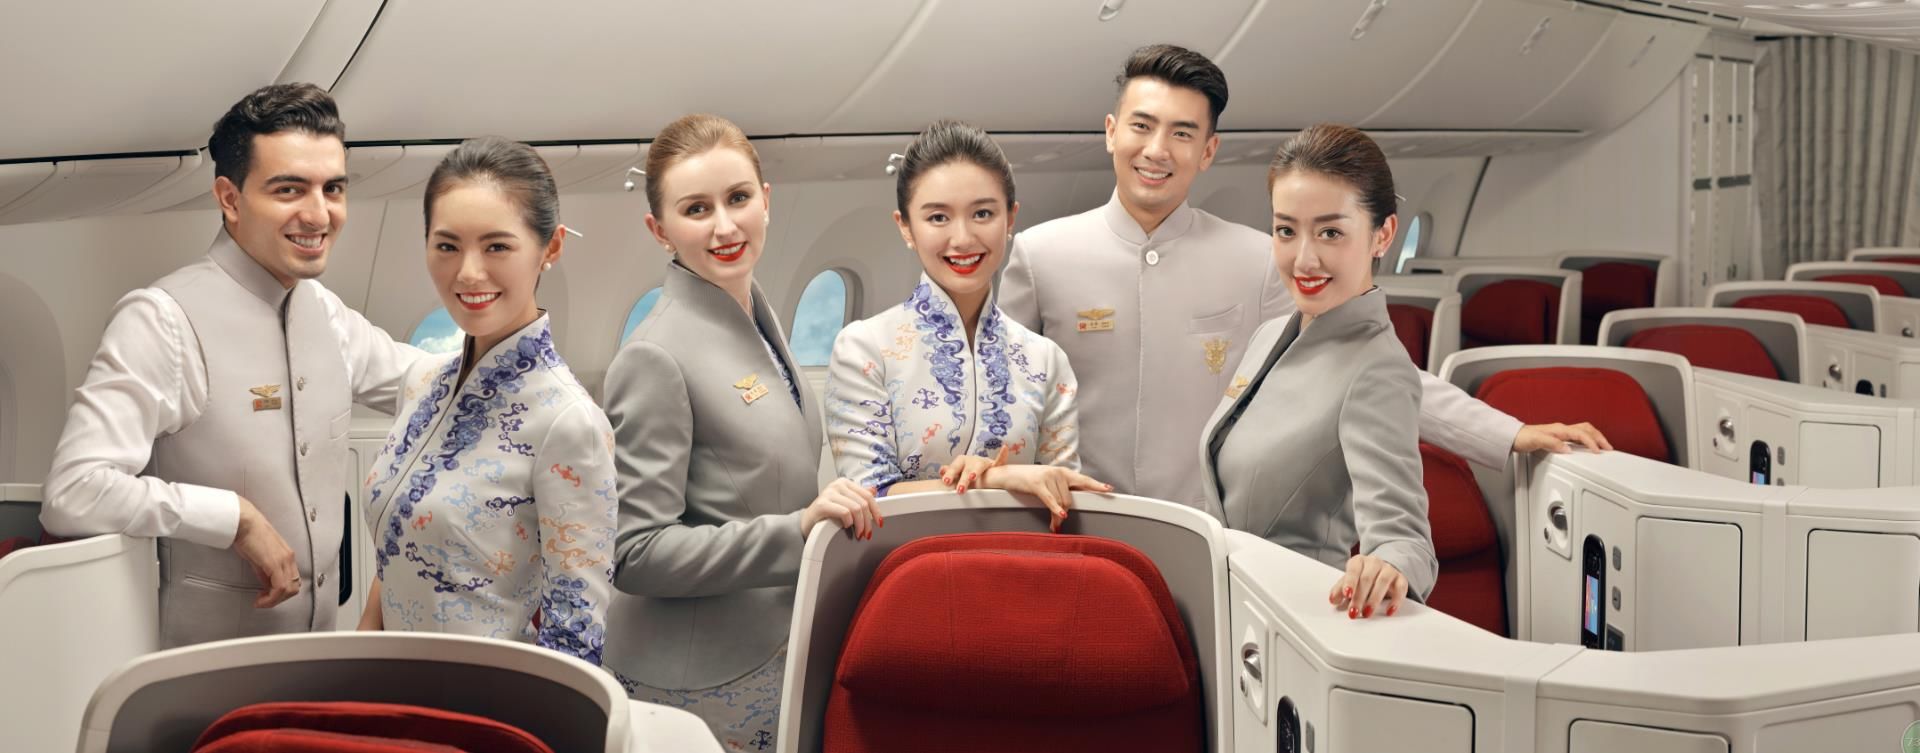 2018全球航空公司排行榜公布,中国三家航空打